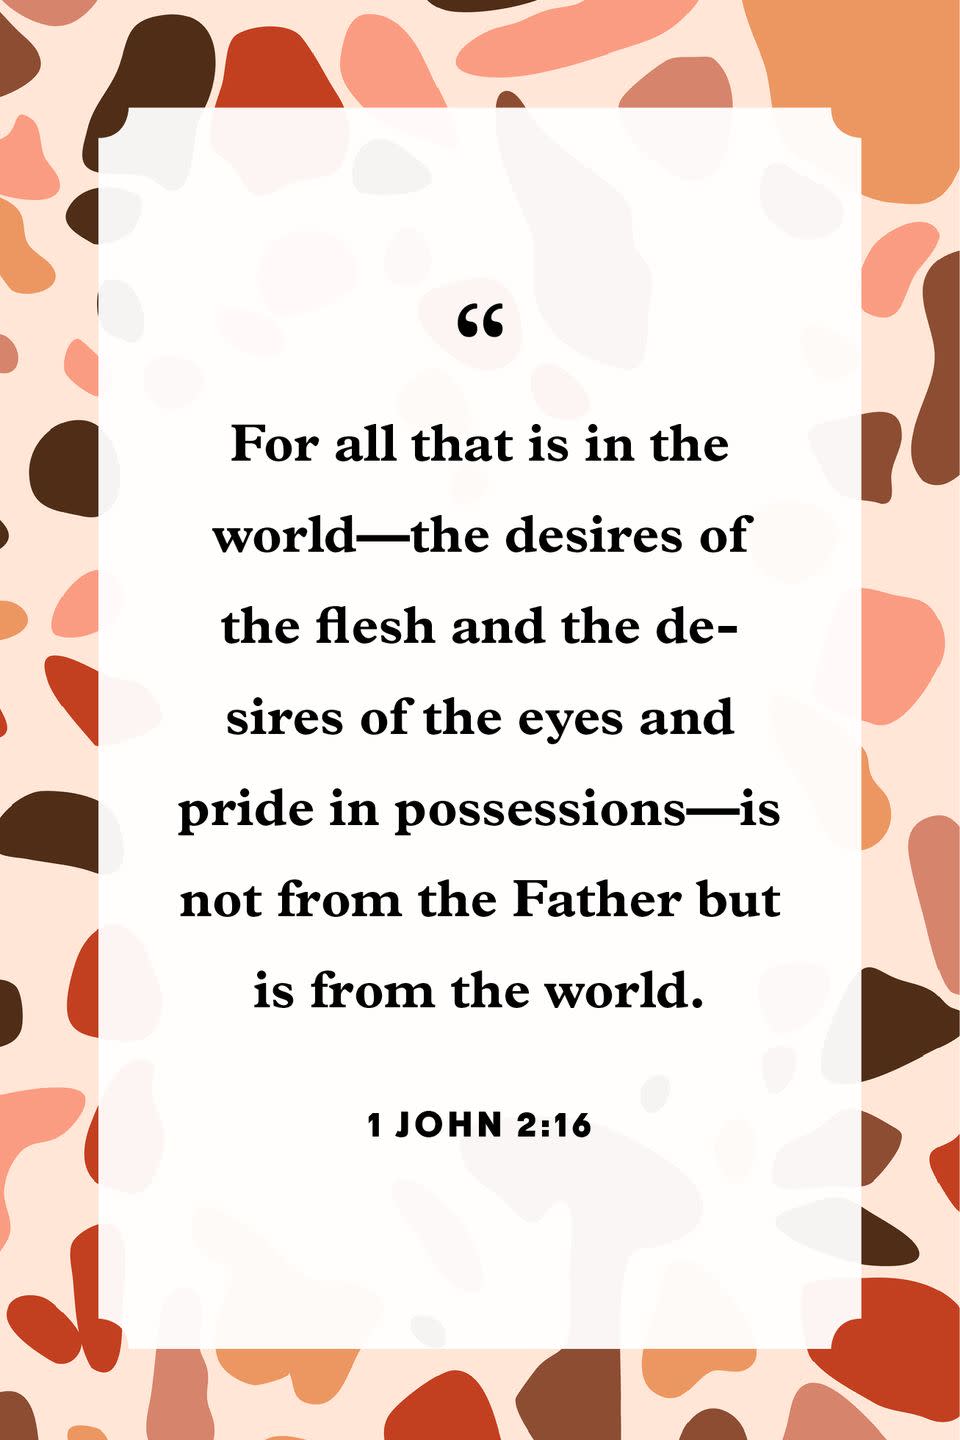 10) 1 John 2:16